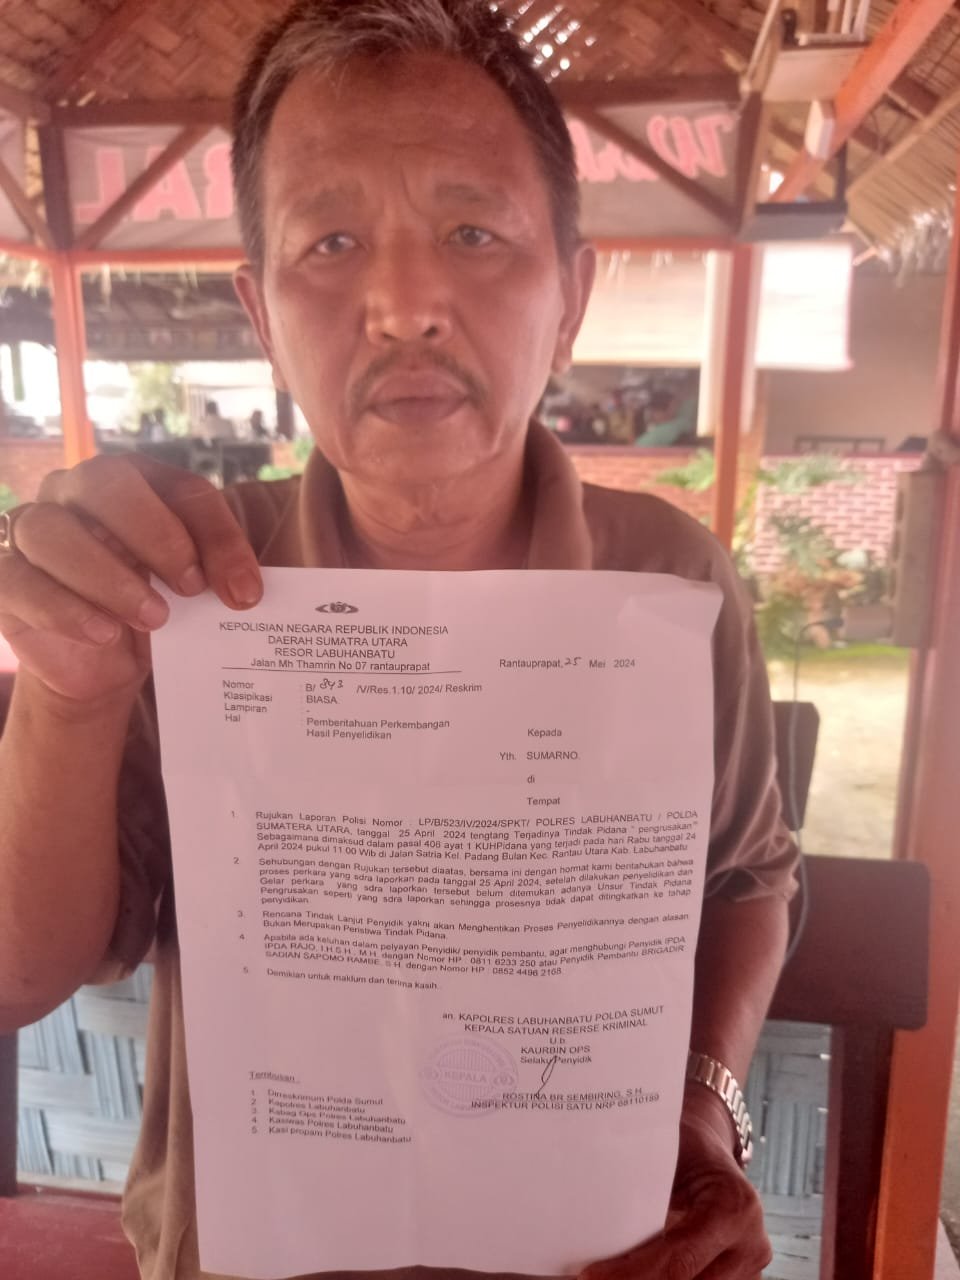 Laporan Pencurian dan pengrusakan Rumah Bapak Sumarno di Polres Labuhan Batu mangkrak